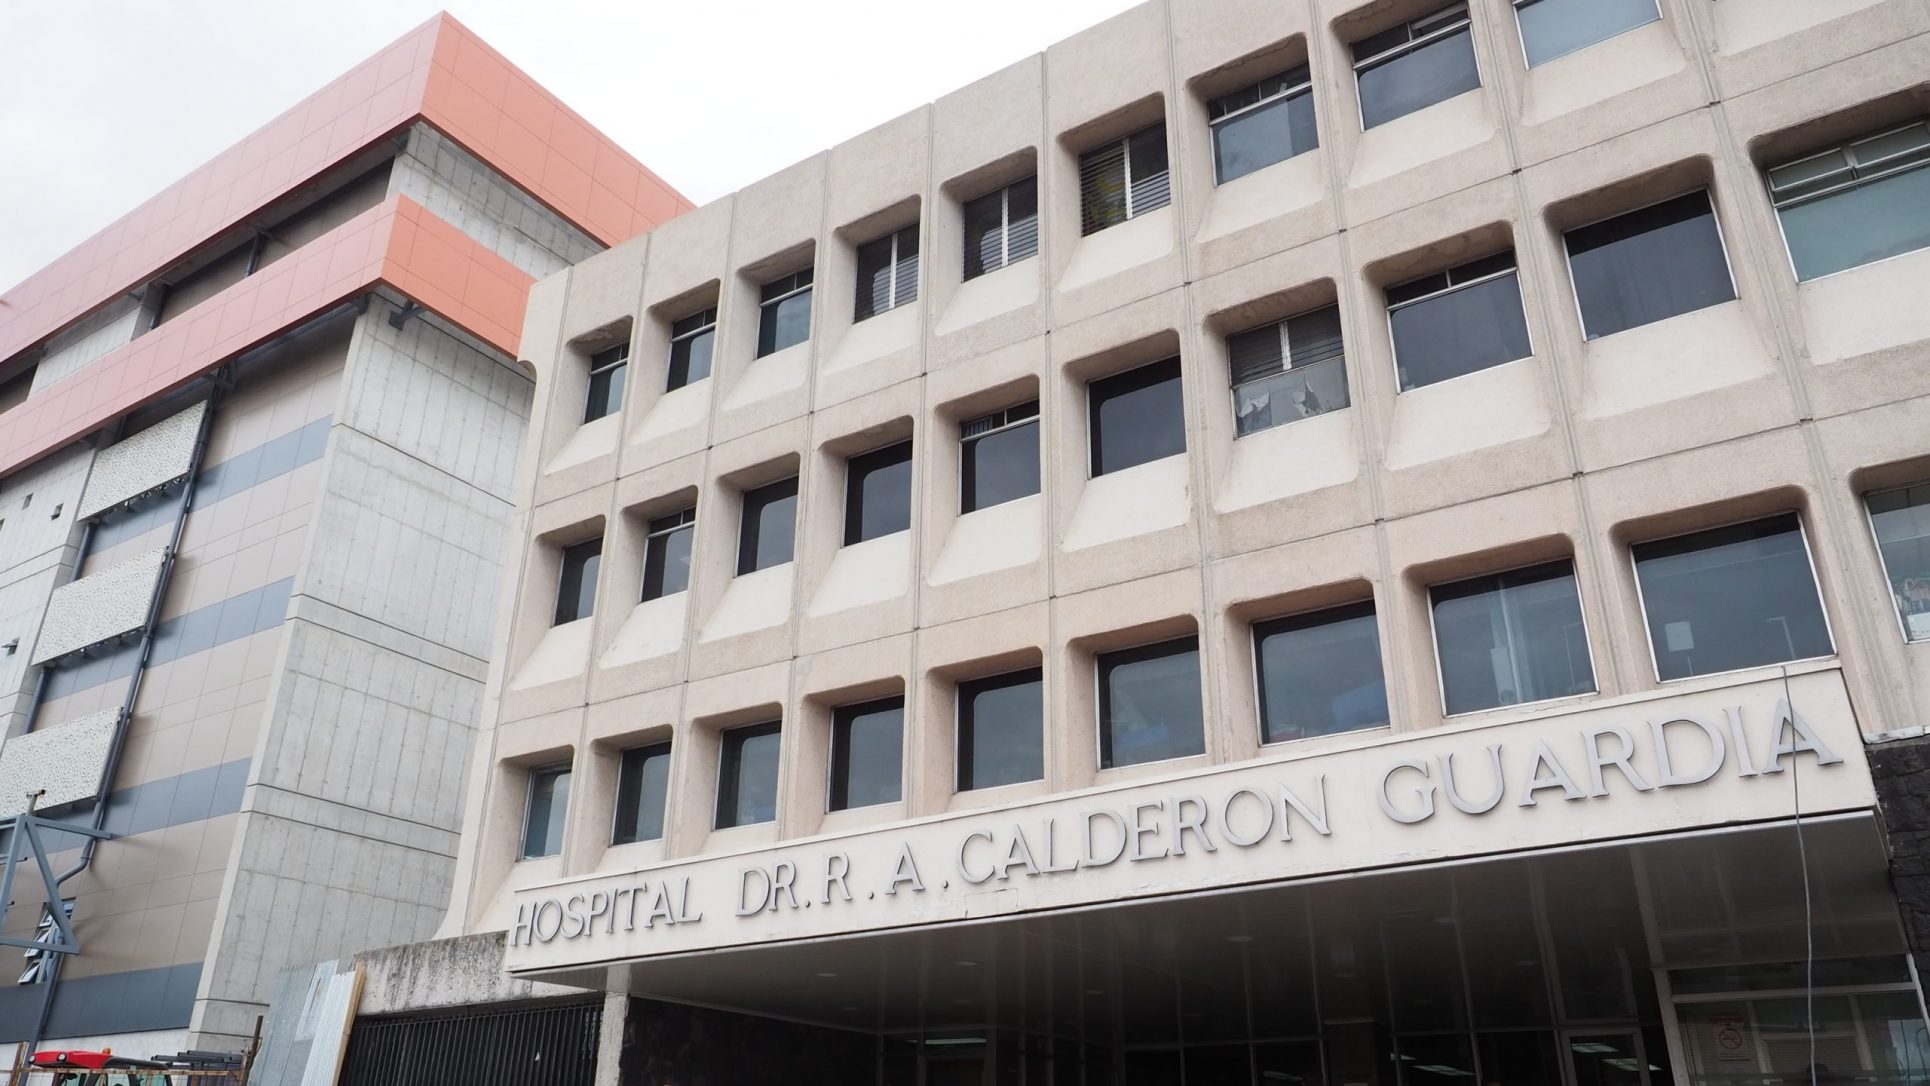 Aíslan a 64 funcionarios del Calderón Guardia por coronavirus; 19 están contagiados